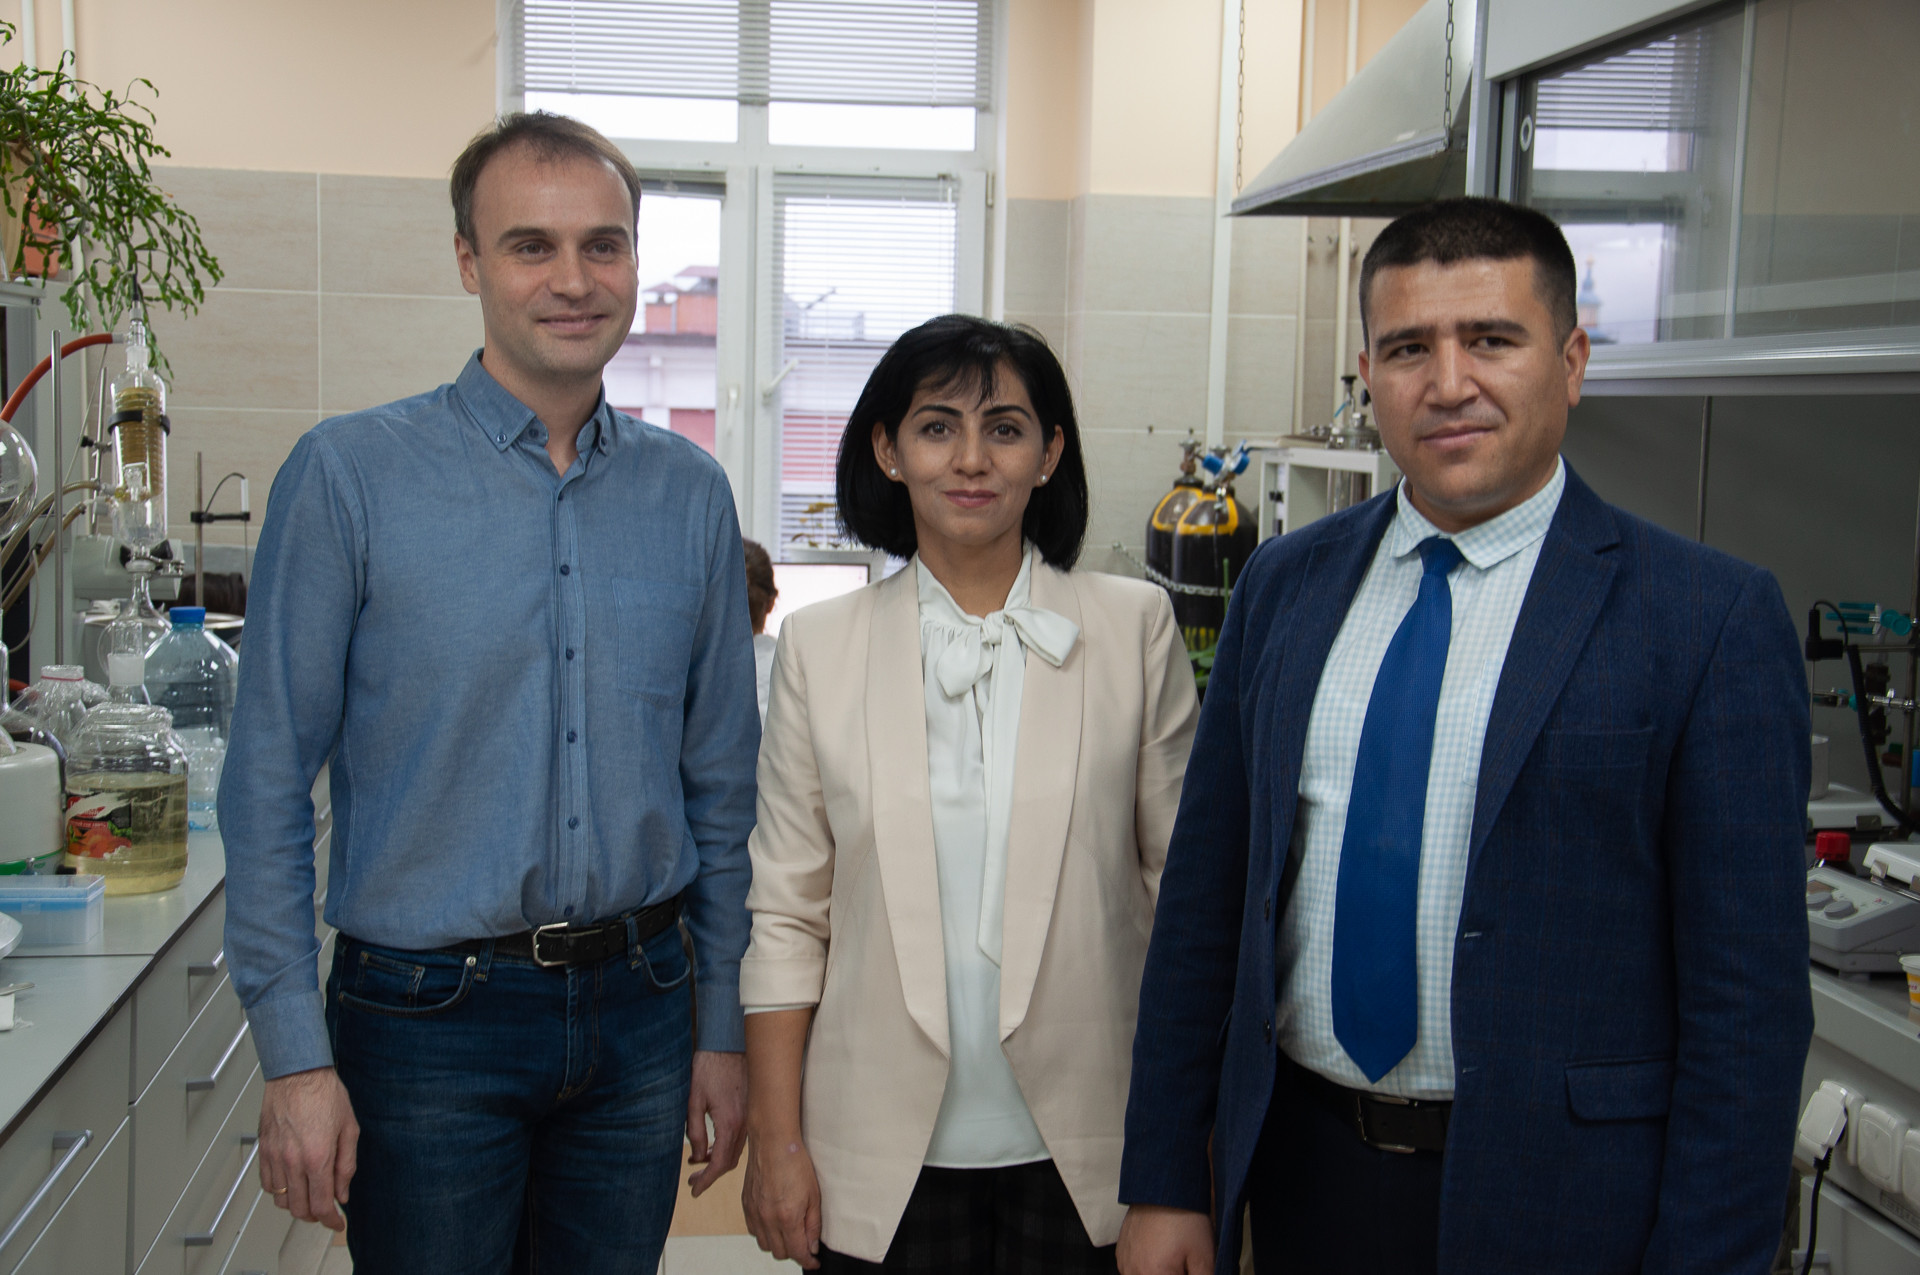 10 ноября Химический институт посетила делегация из Республики Узбекистан ,Химический институт им. А. М. Бутлерова, Республика Узбекистан, международное сотрудничество